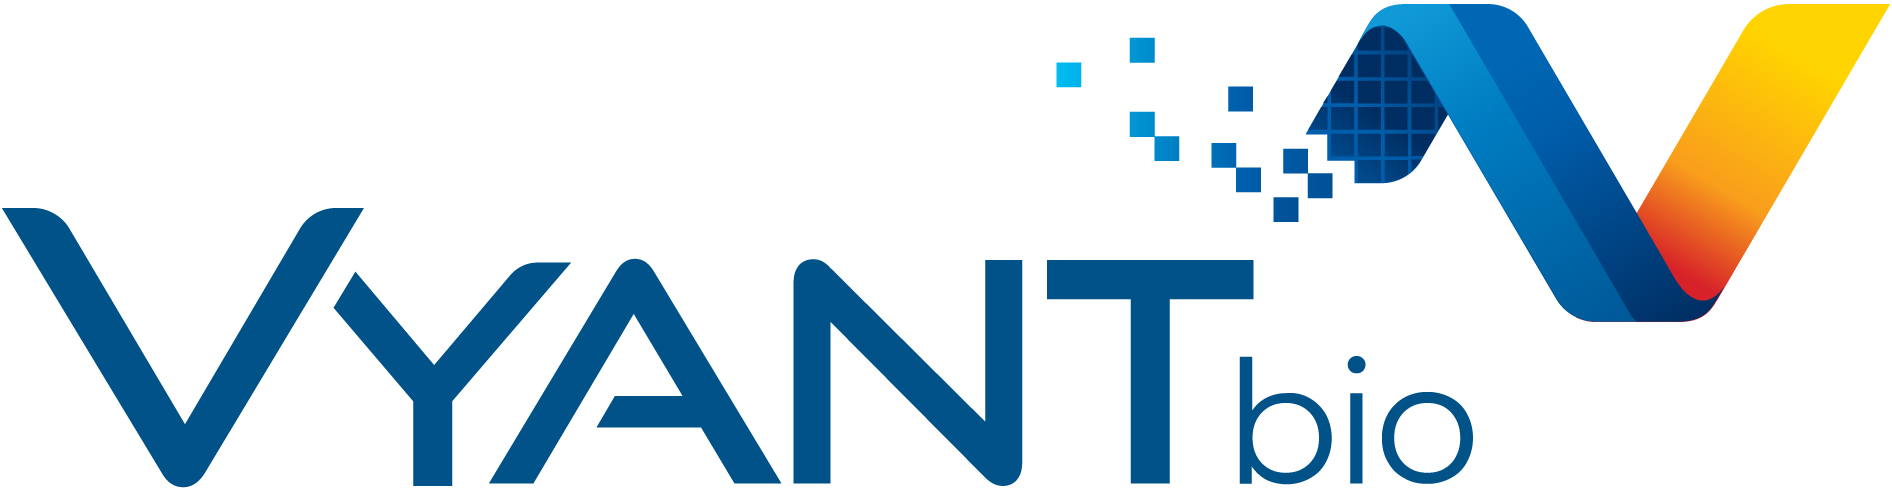 Vyant Bio Logo